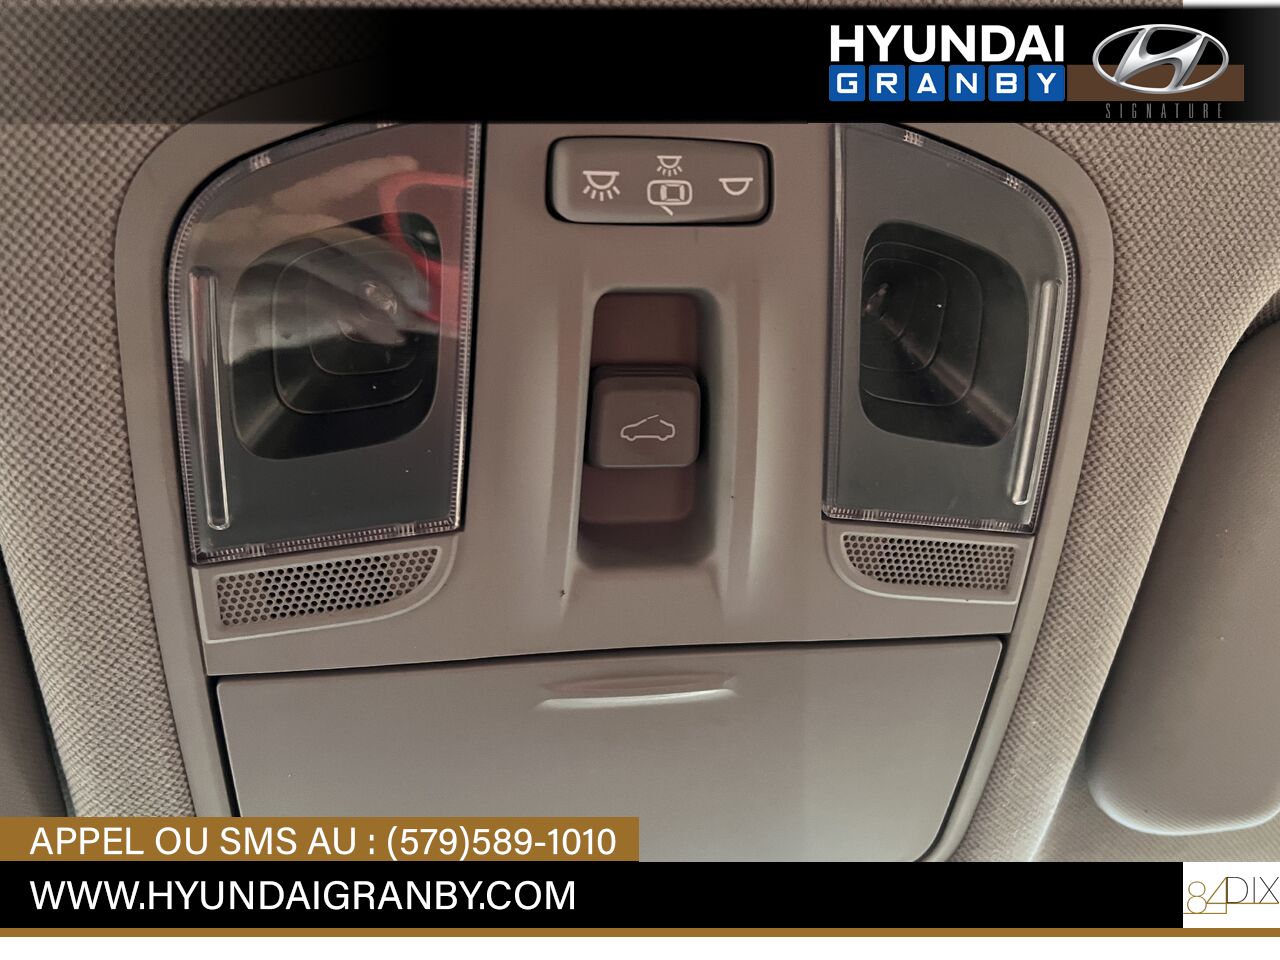 Hyundai Ioniq hybride 2017 Granby - photo #22